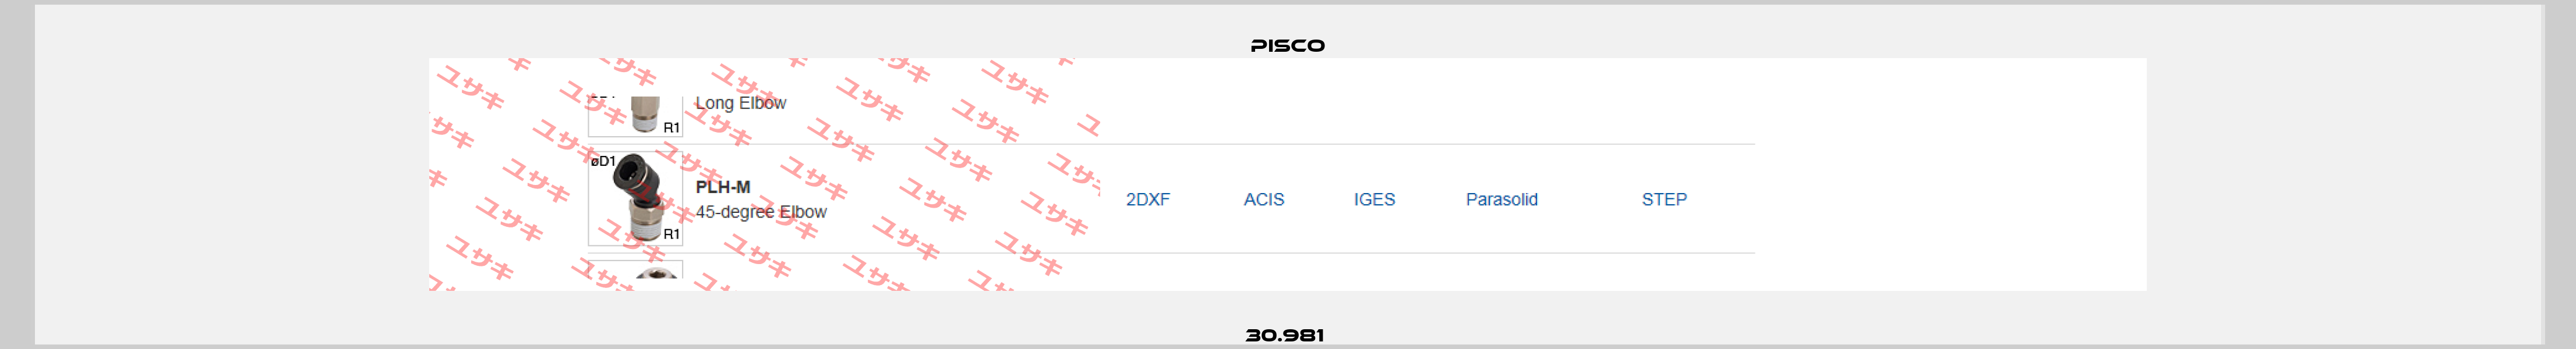 30.981  Pisco